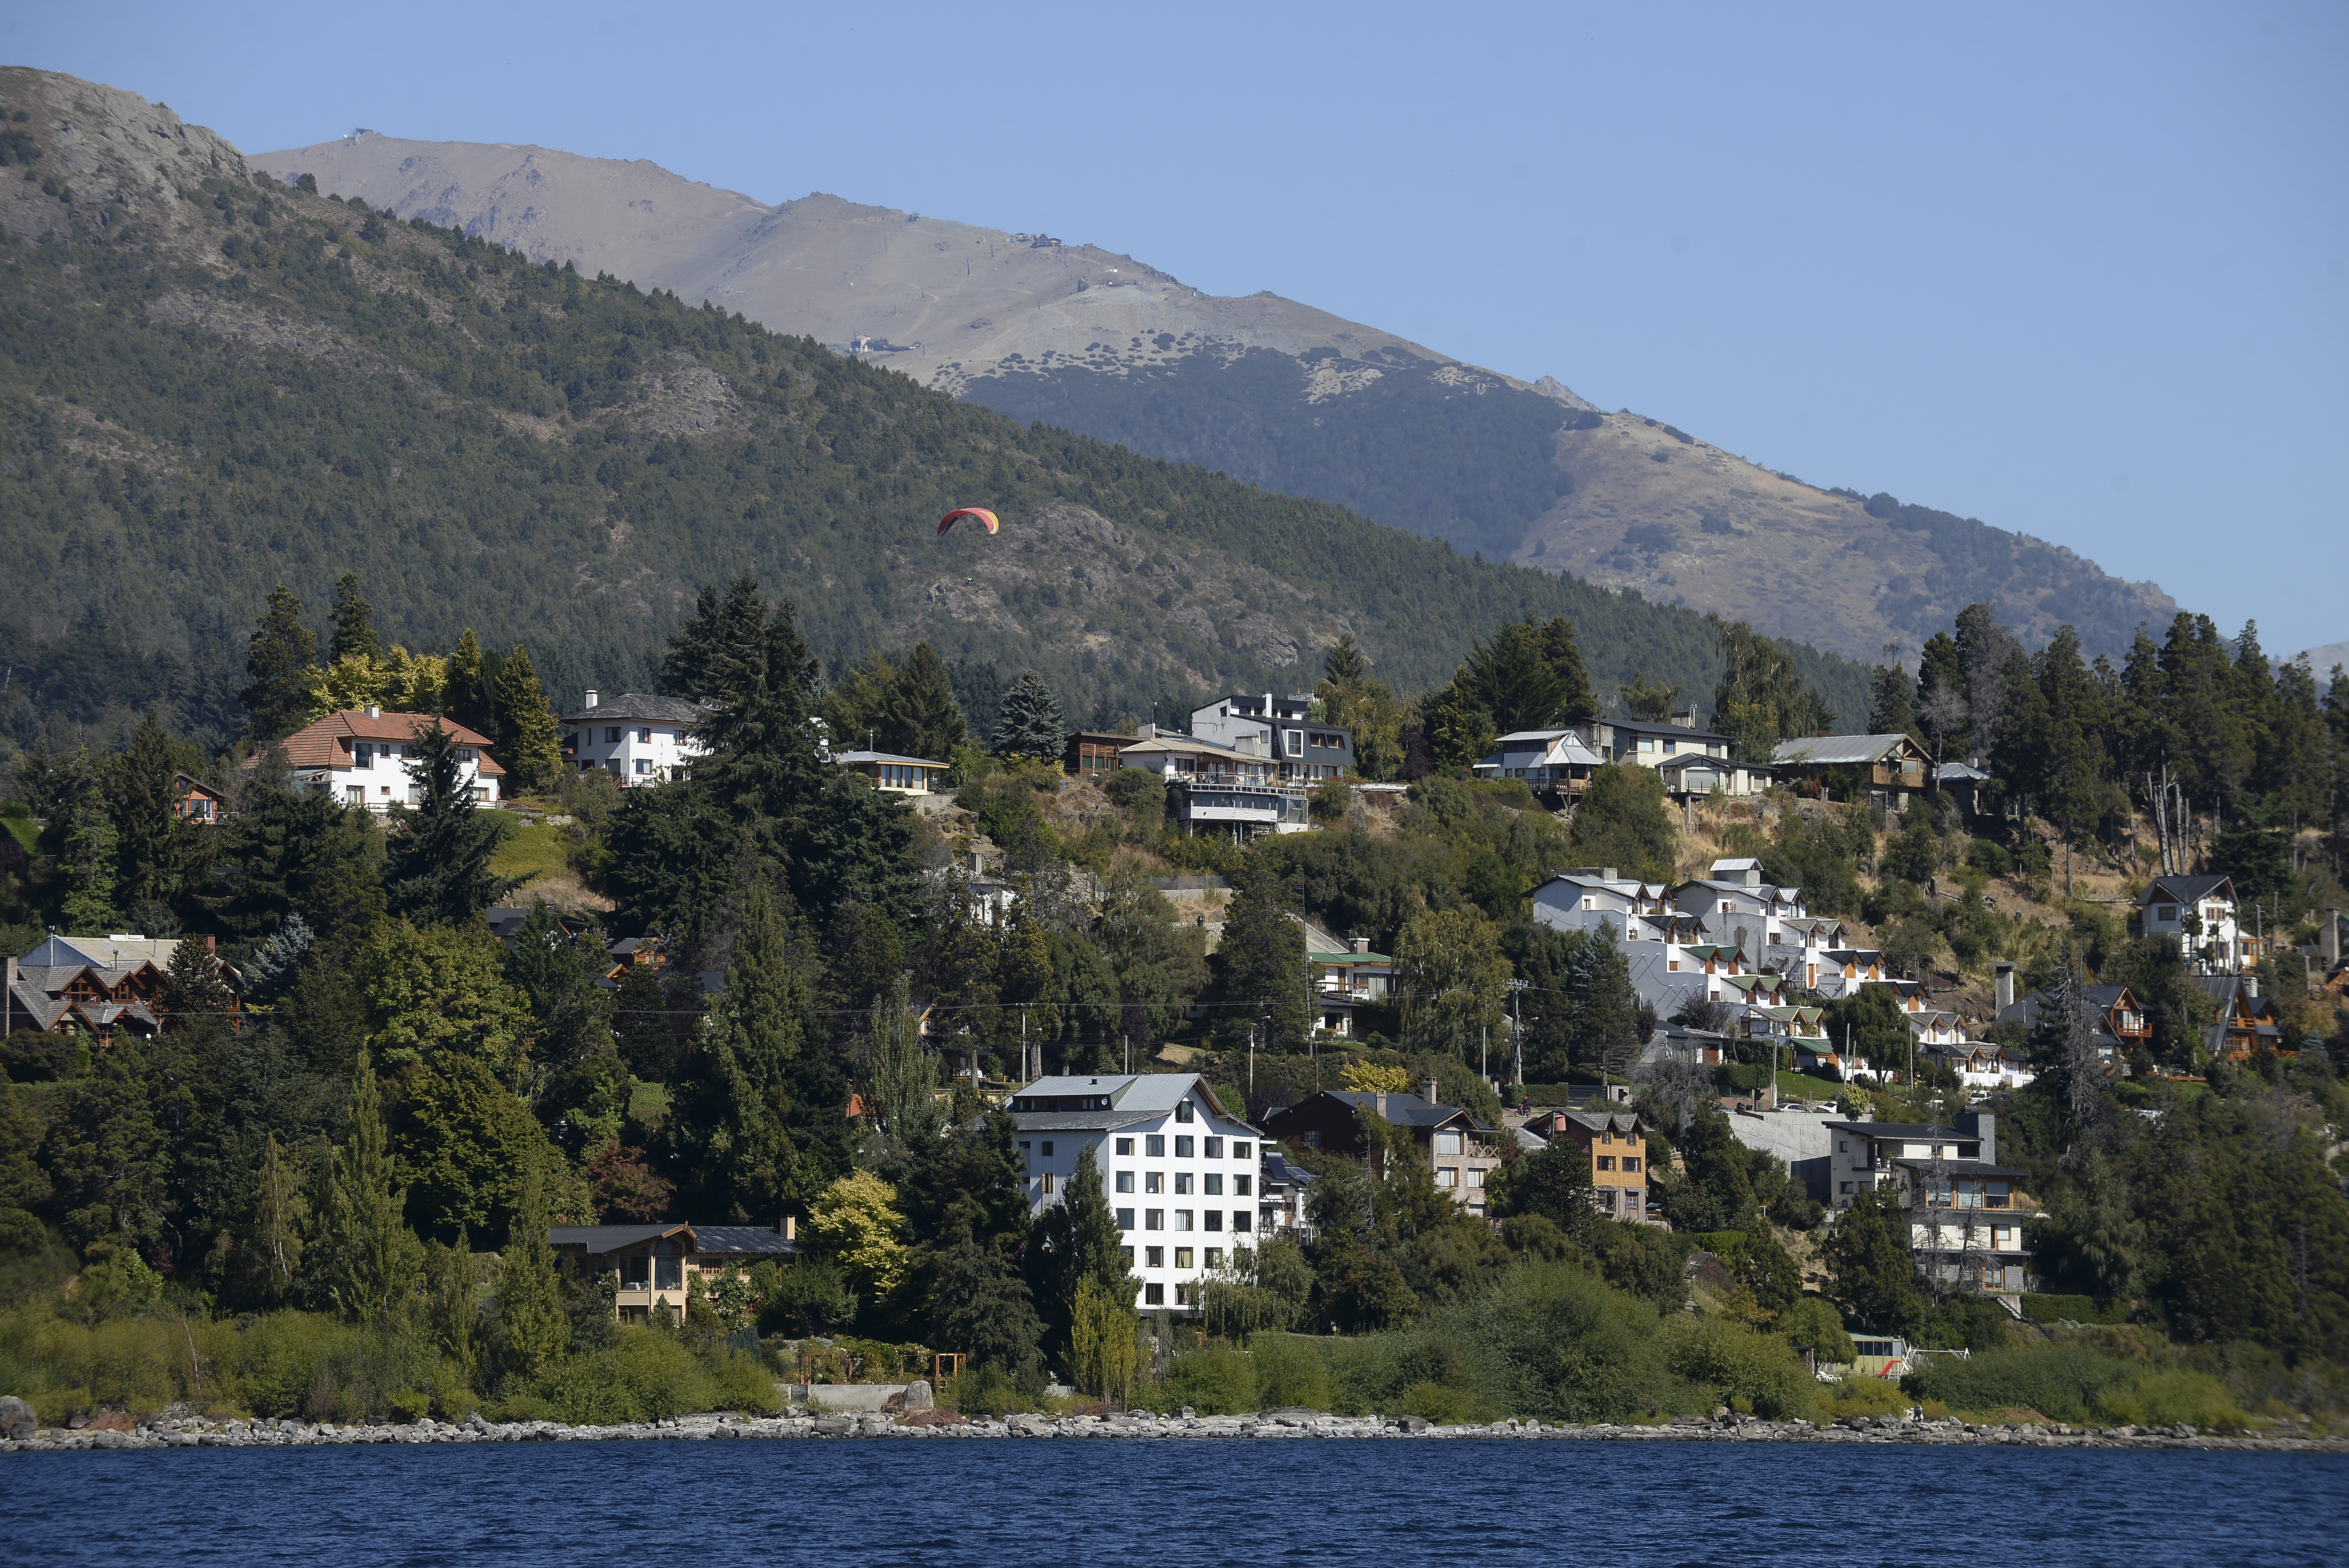 De acuerdo a datos oficiales, Bariloche tiene 113.000 habitantes según el censo del 2010. Foto: Chino Leiva